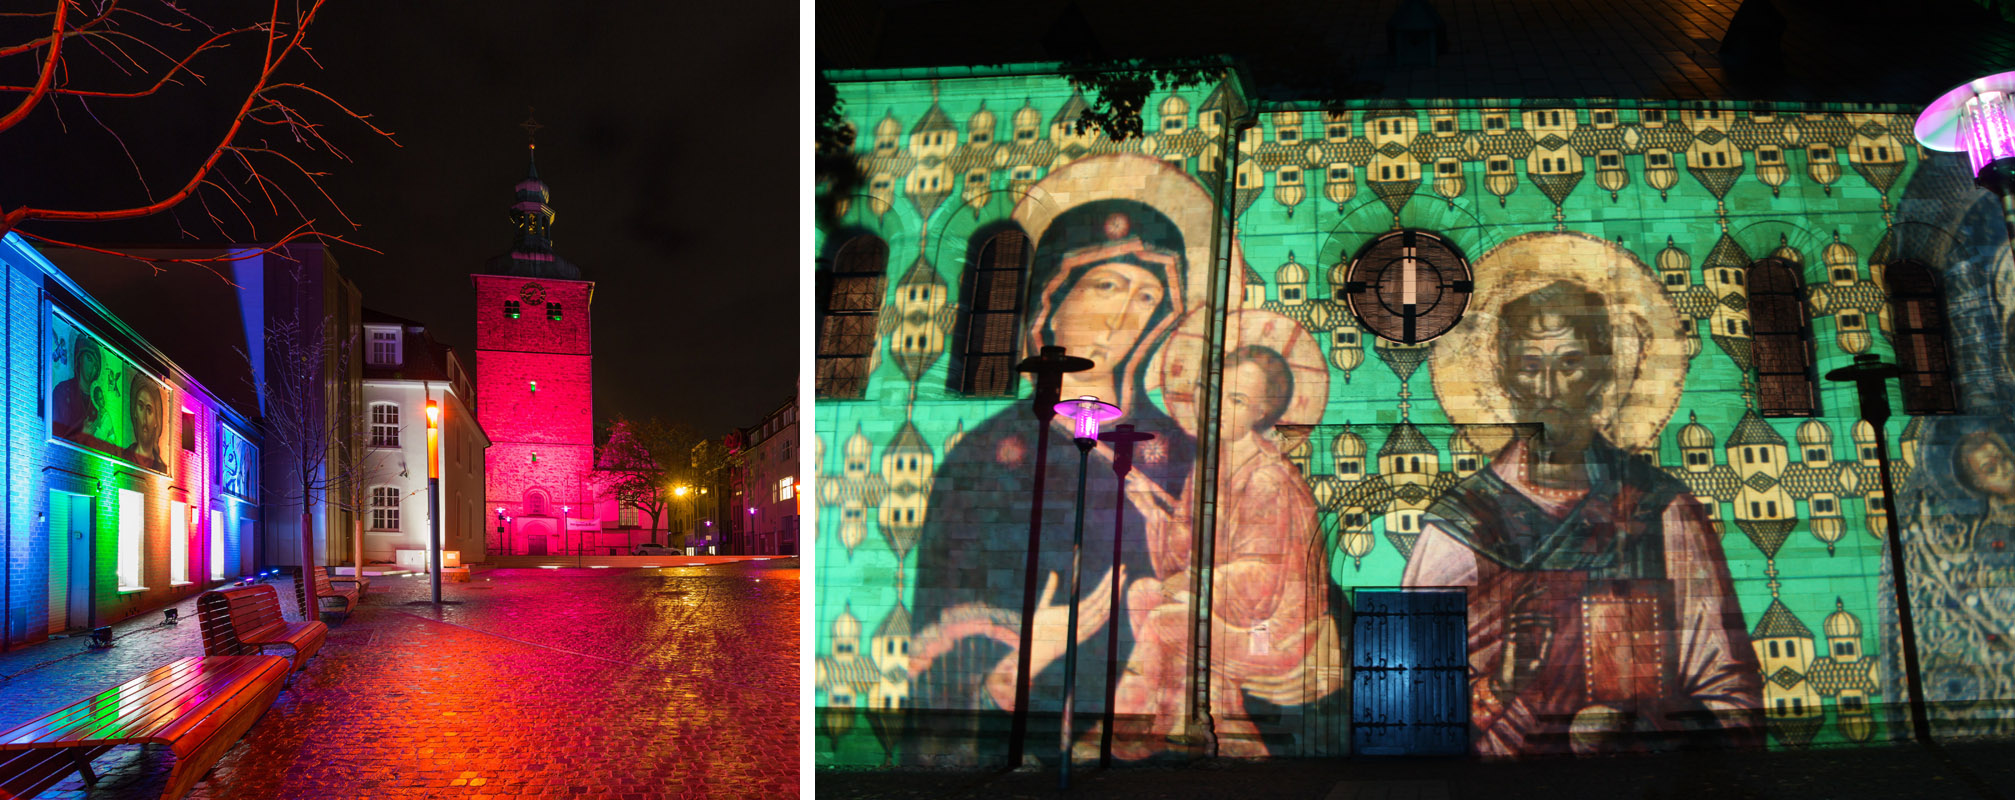 Das Bild zeigt die beleuchteten Fassaden des Ikonenmuseums Recklinghausen und der Pfarrkirche St. Peter